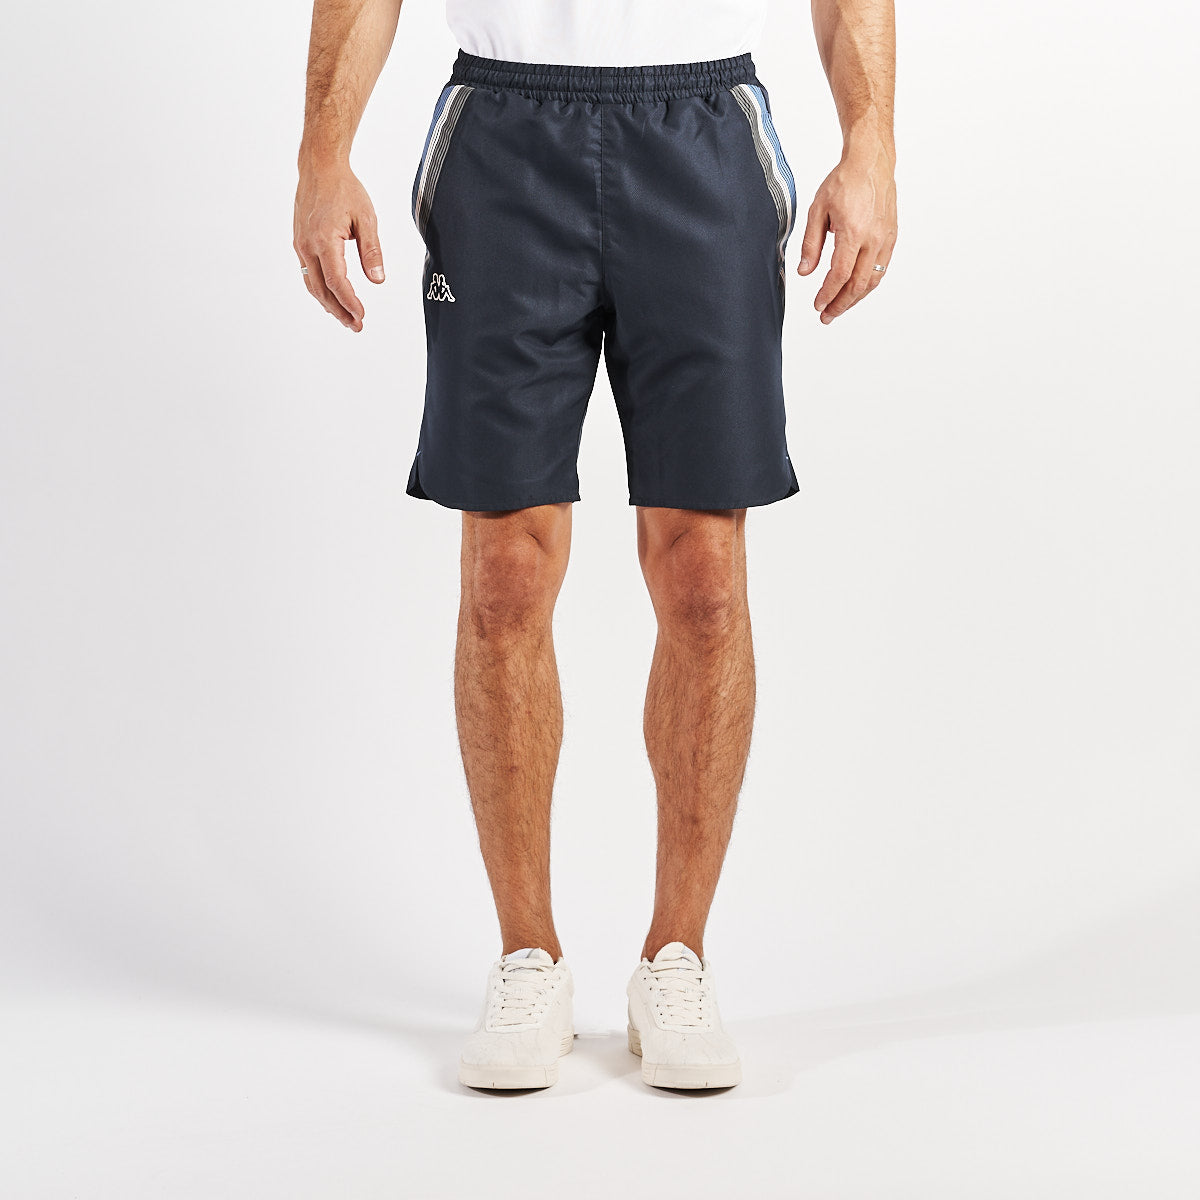 Pantalones cortos Azules Ijude Hombre - imagen 1